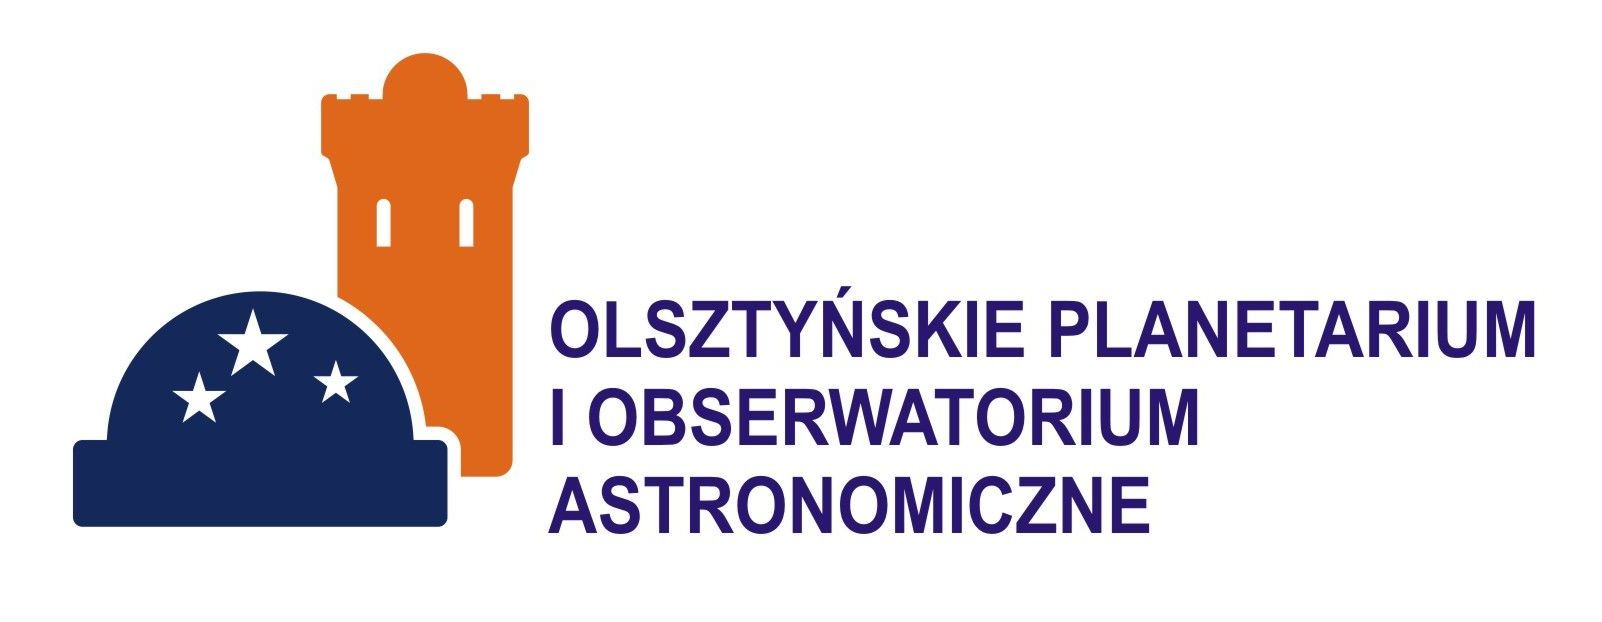 logo planetarium1